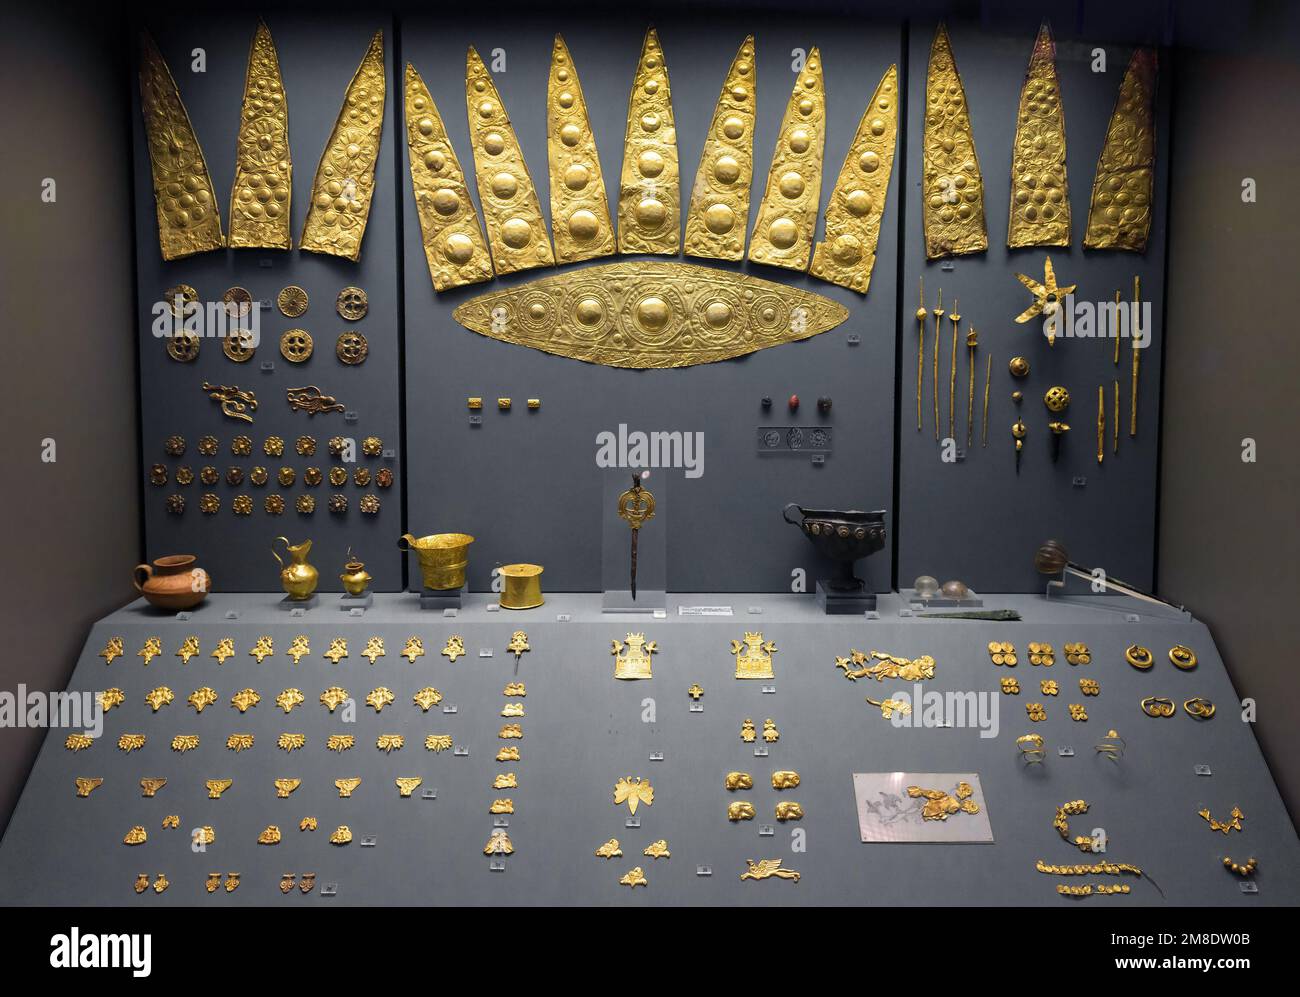 Manufatti d'oro, gioielli dell'antica Micene greca nel Museo Archeologico Nazionale di Atene, Grecia. Tema del tesoro, histo Foto Stock